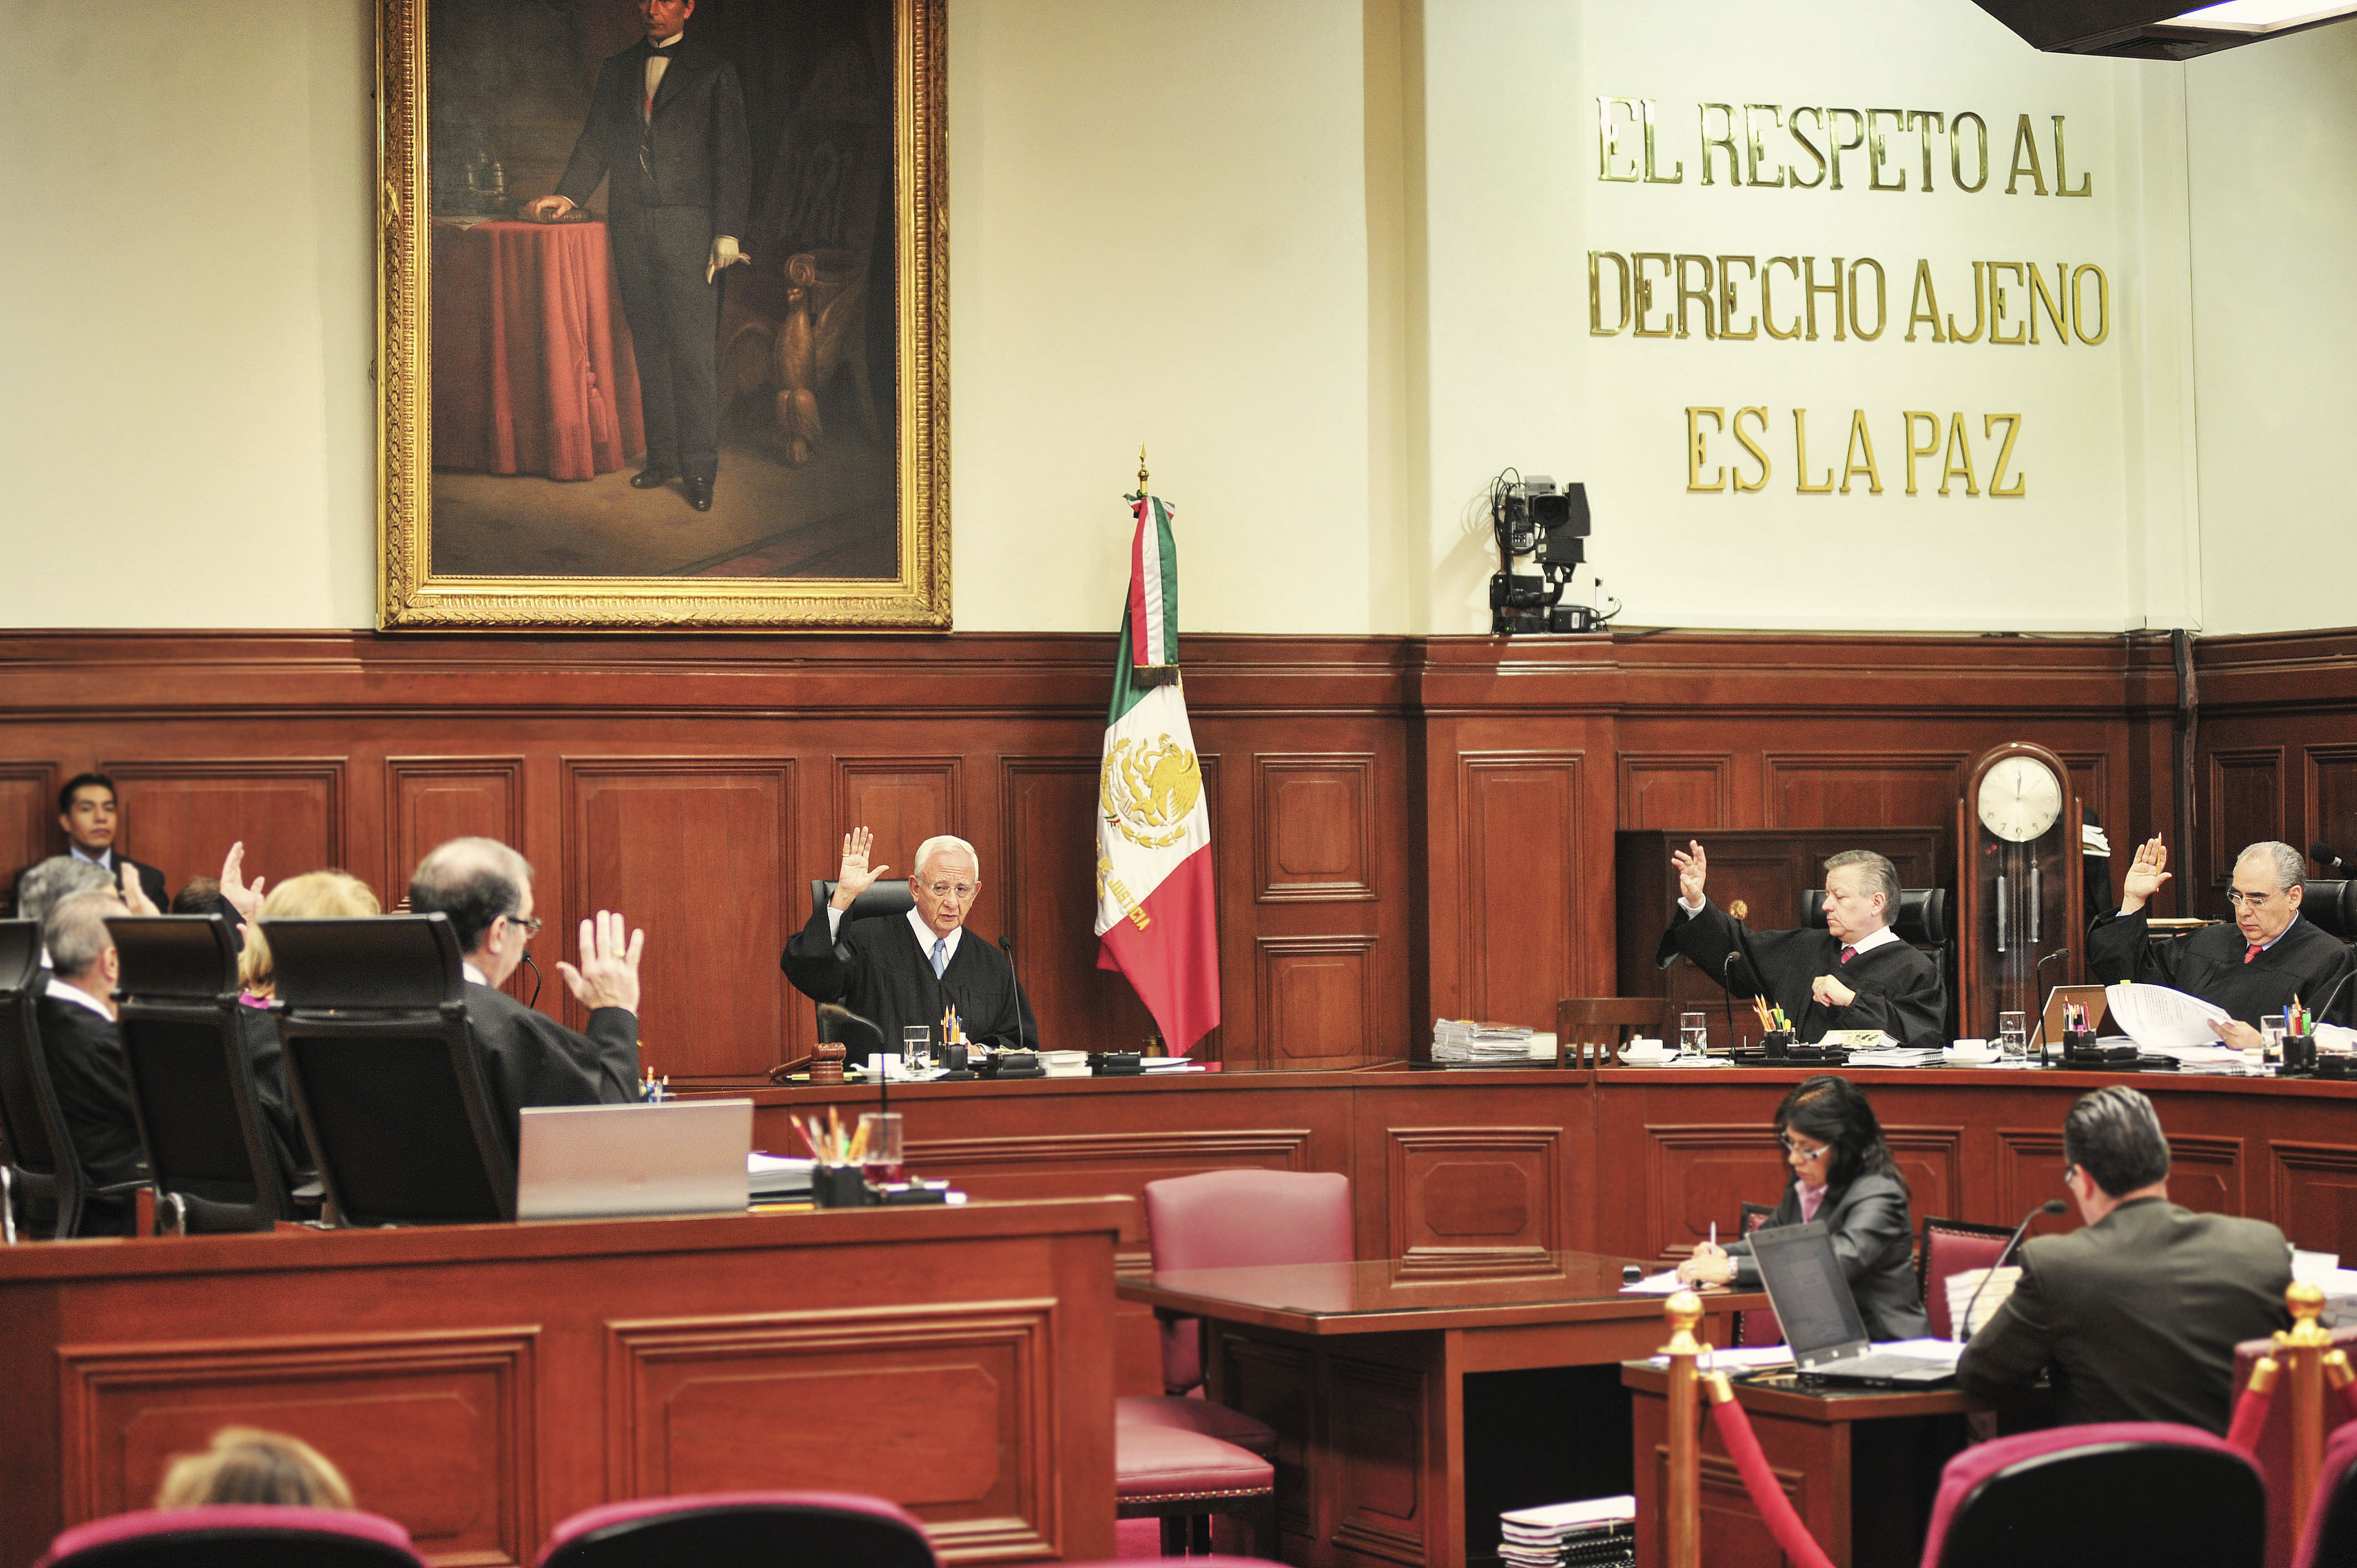 Государственные суда. Исполнительная власть Мексики. Верховный суд Мексики. Судебная система Мексики. Суд в Америке.